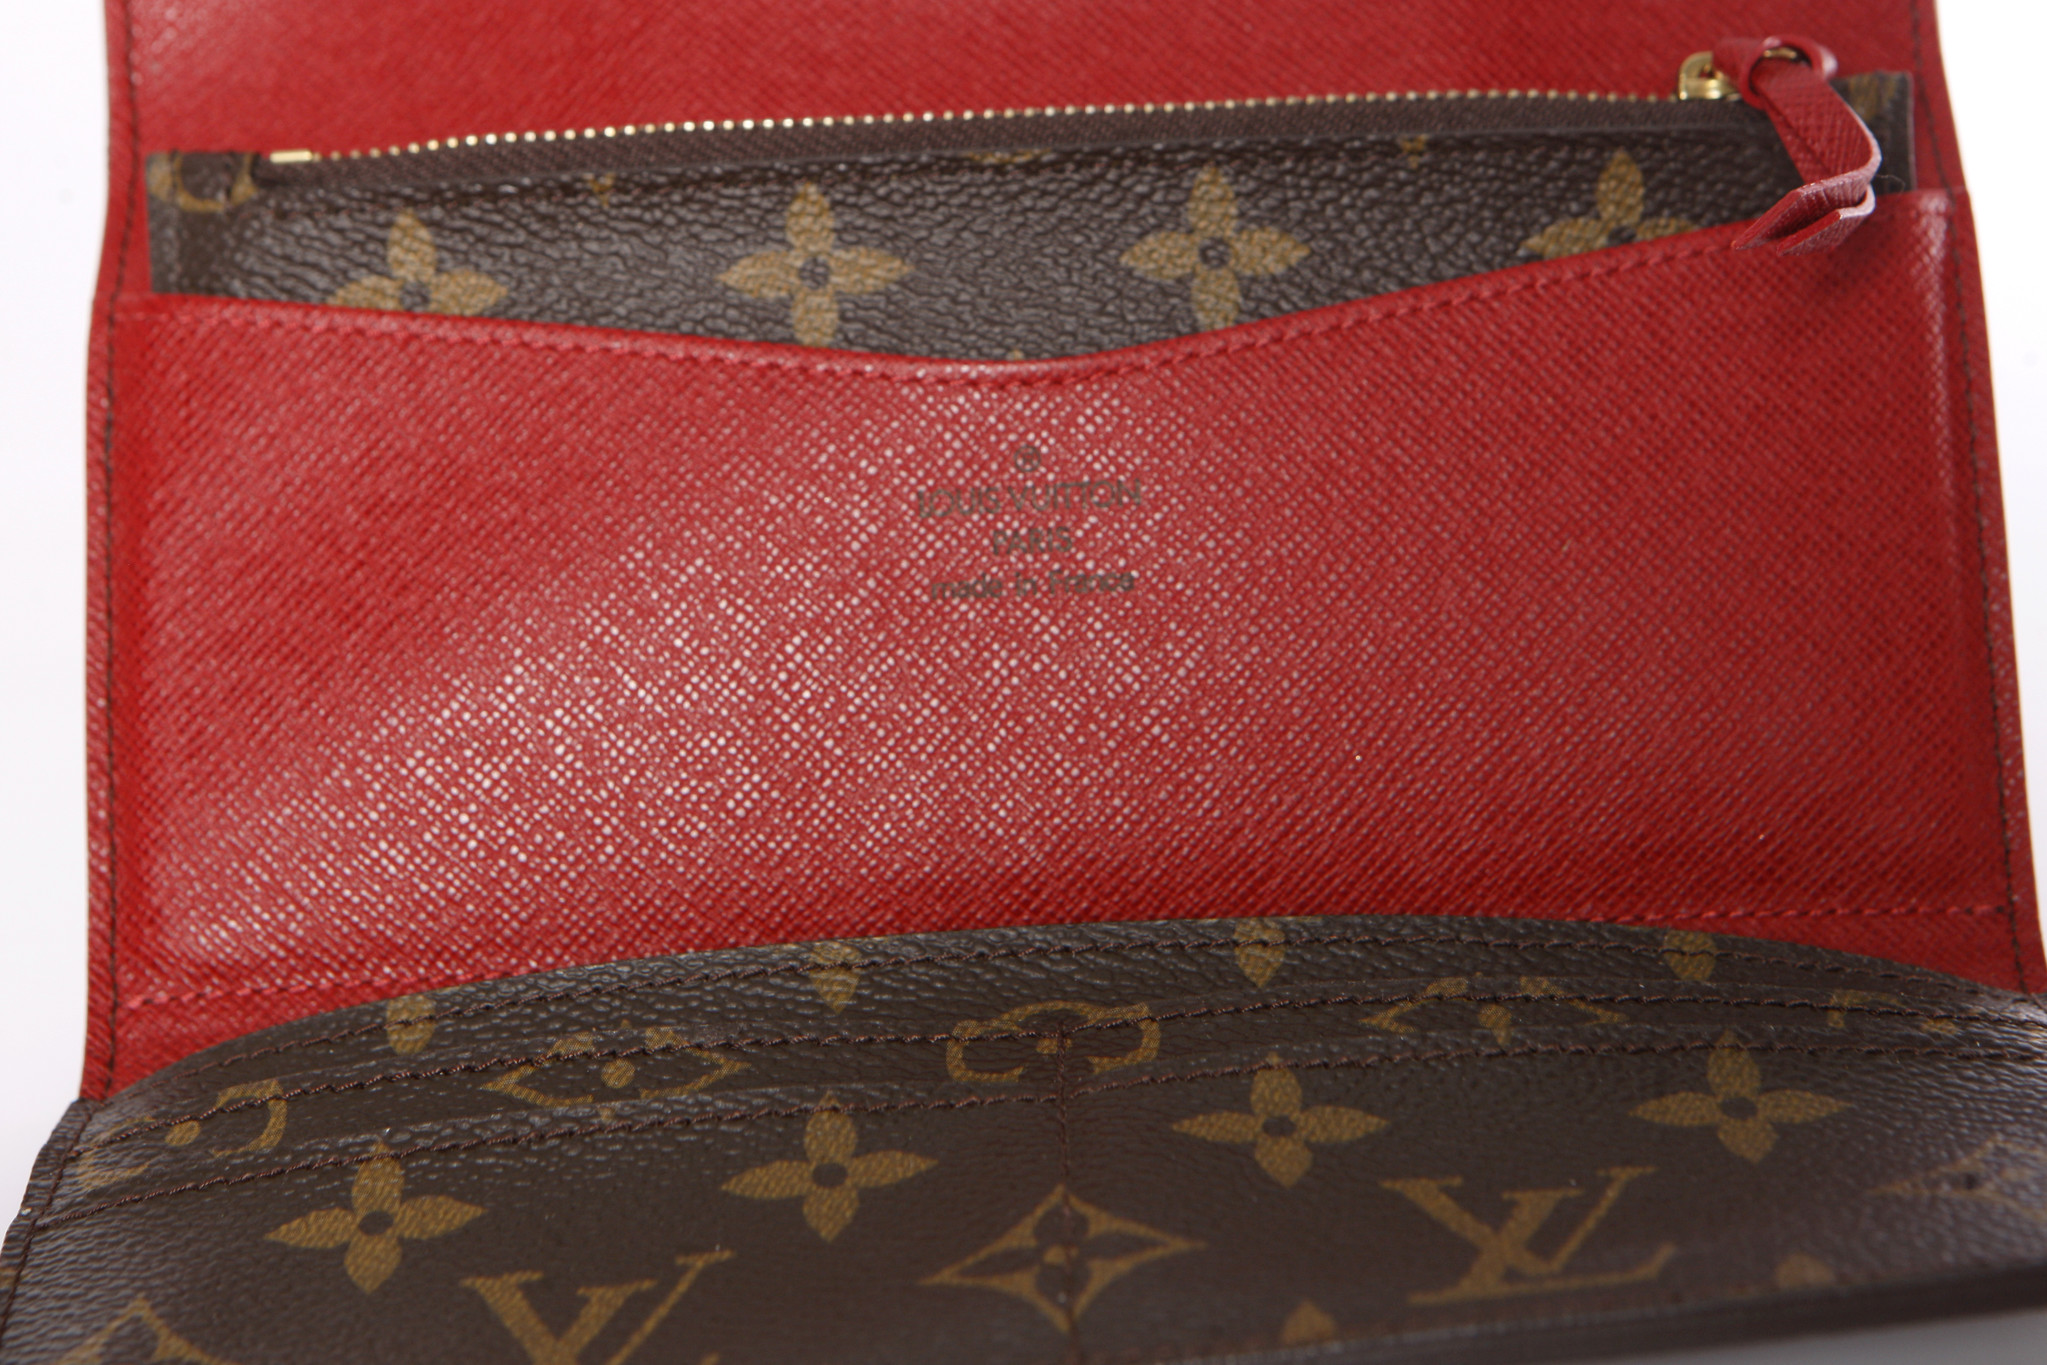 Louis Vuitton, Joséphine monogram tri-fold wallet in red. - Unique